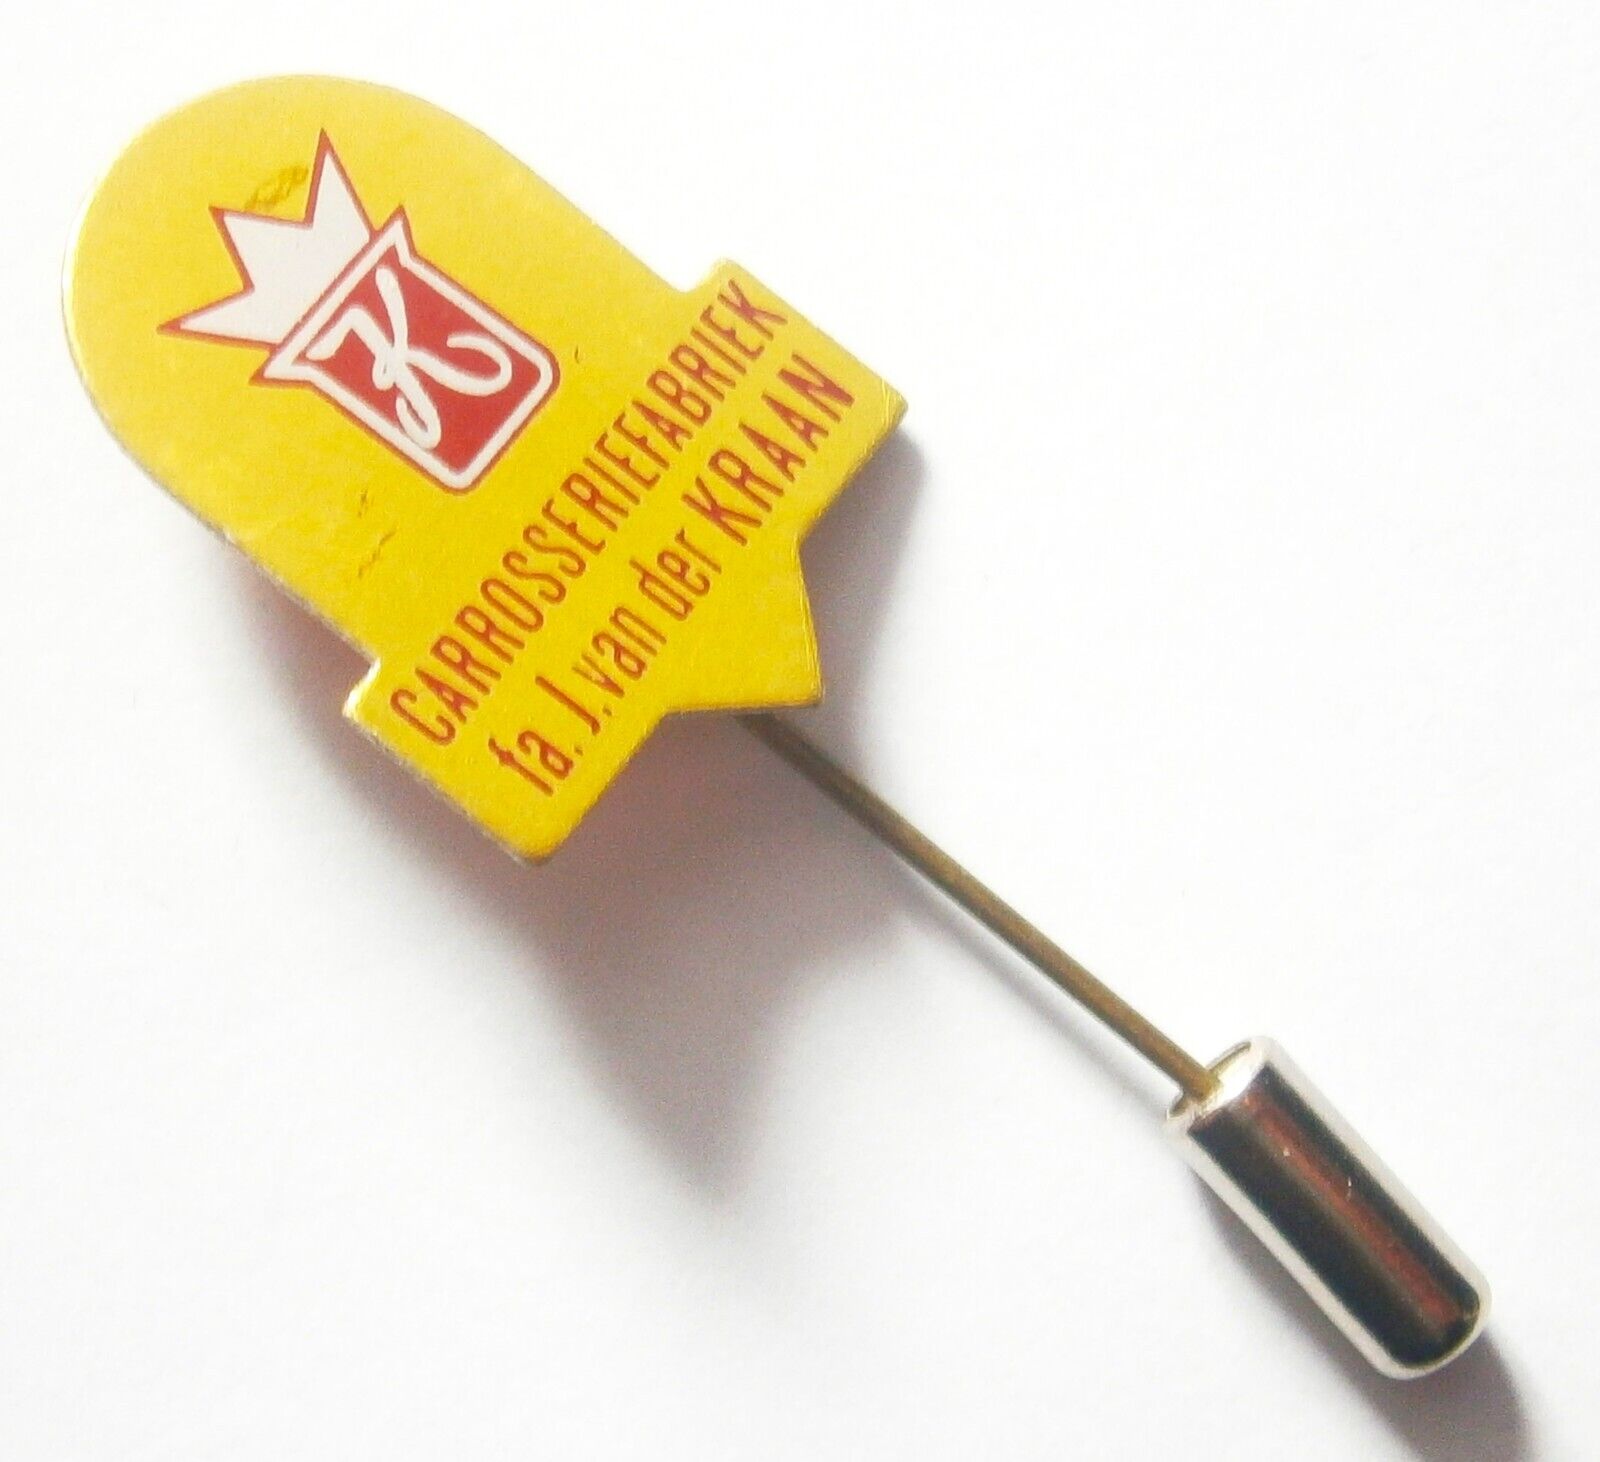 Y830) Karrosserie fabriek Body work Vehicle Factory vintage badge lapel pin